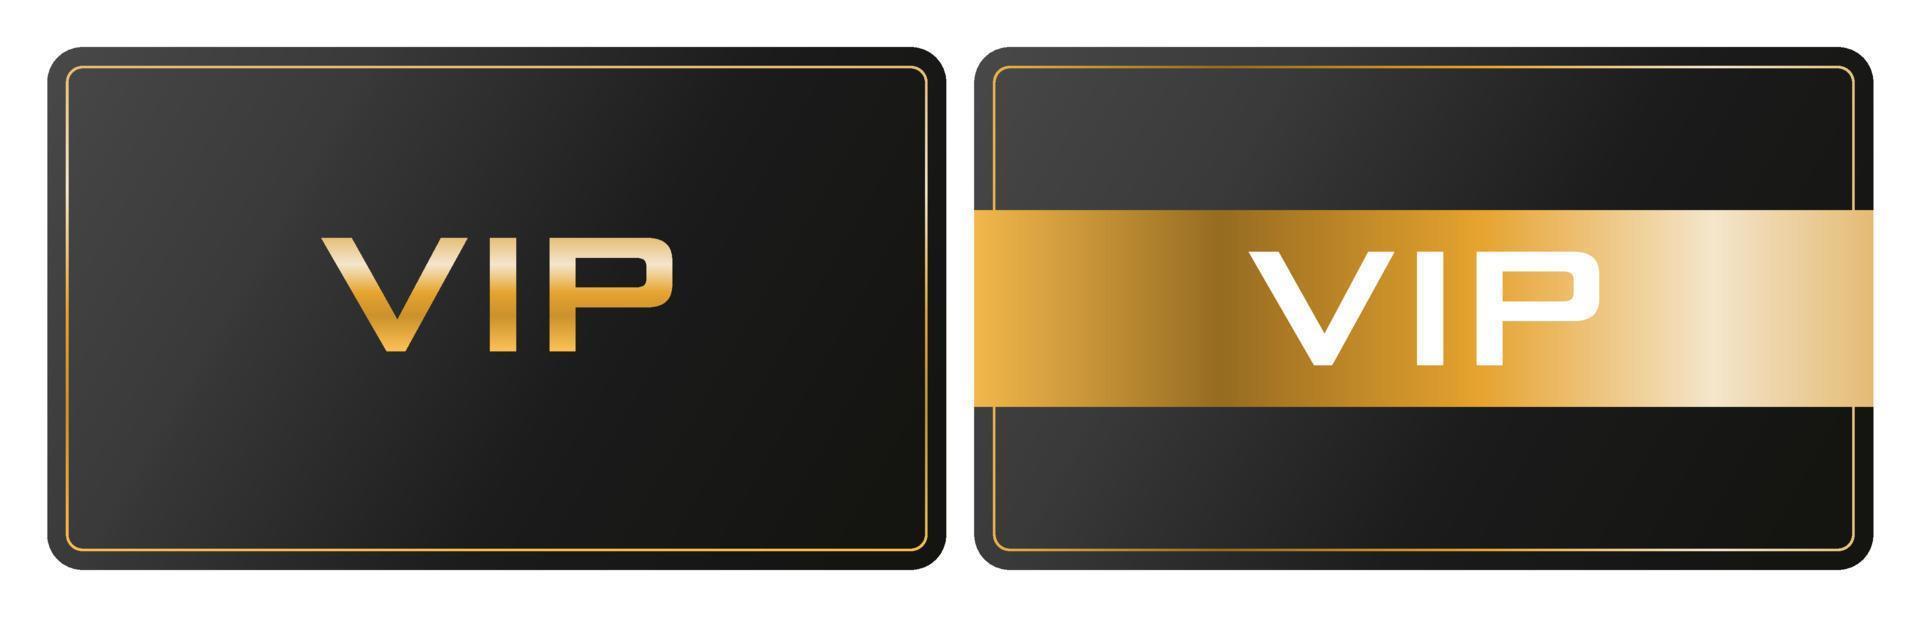 projeto de vetor de cartão de membro vip. símbolo de identidade premium